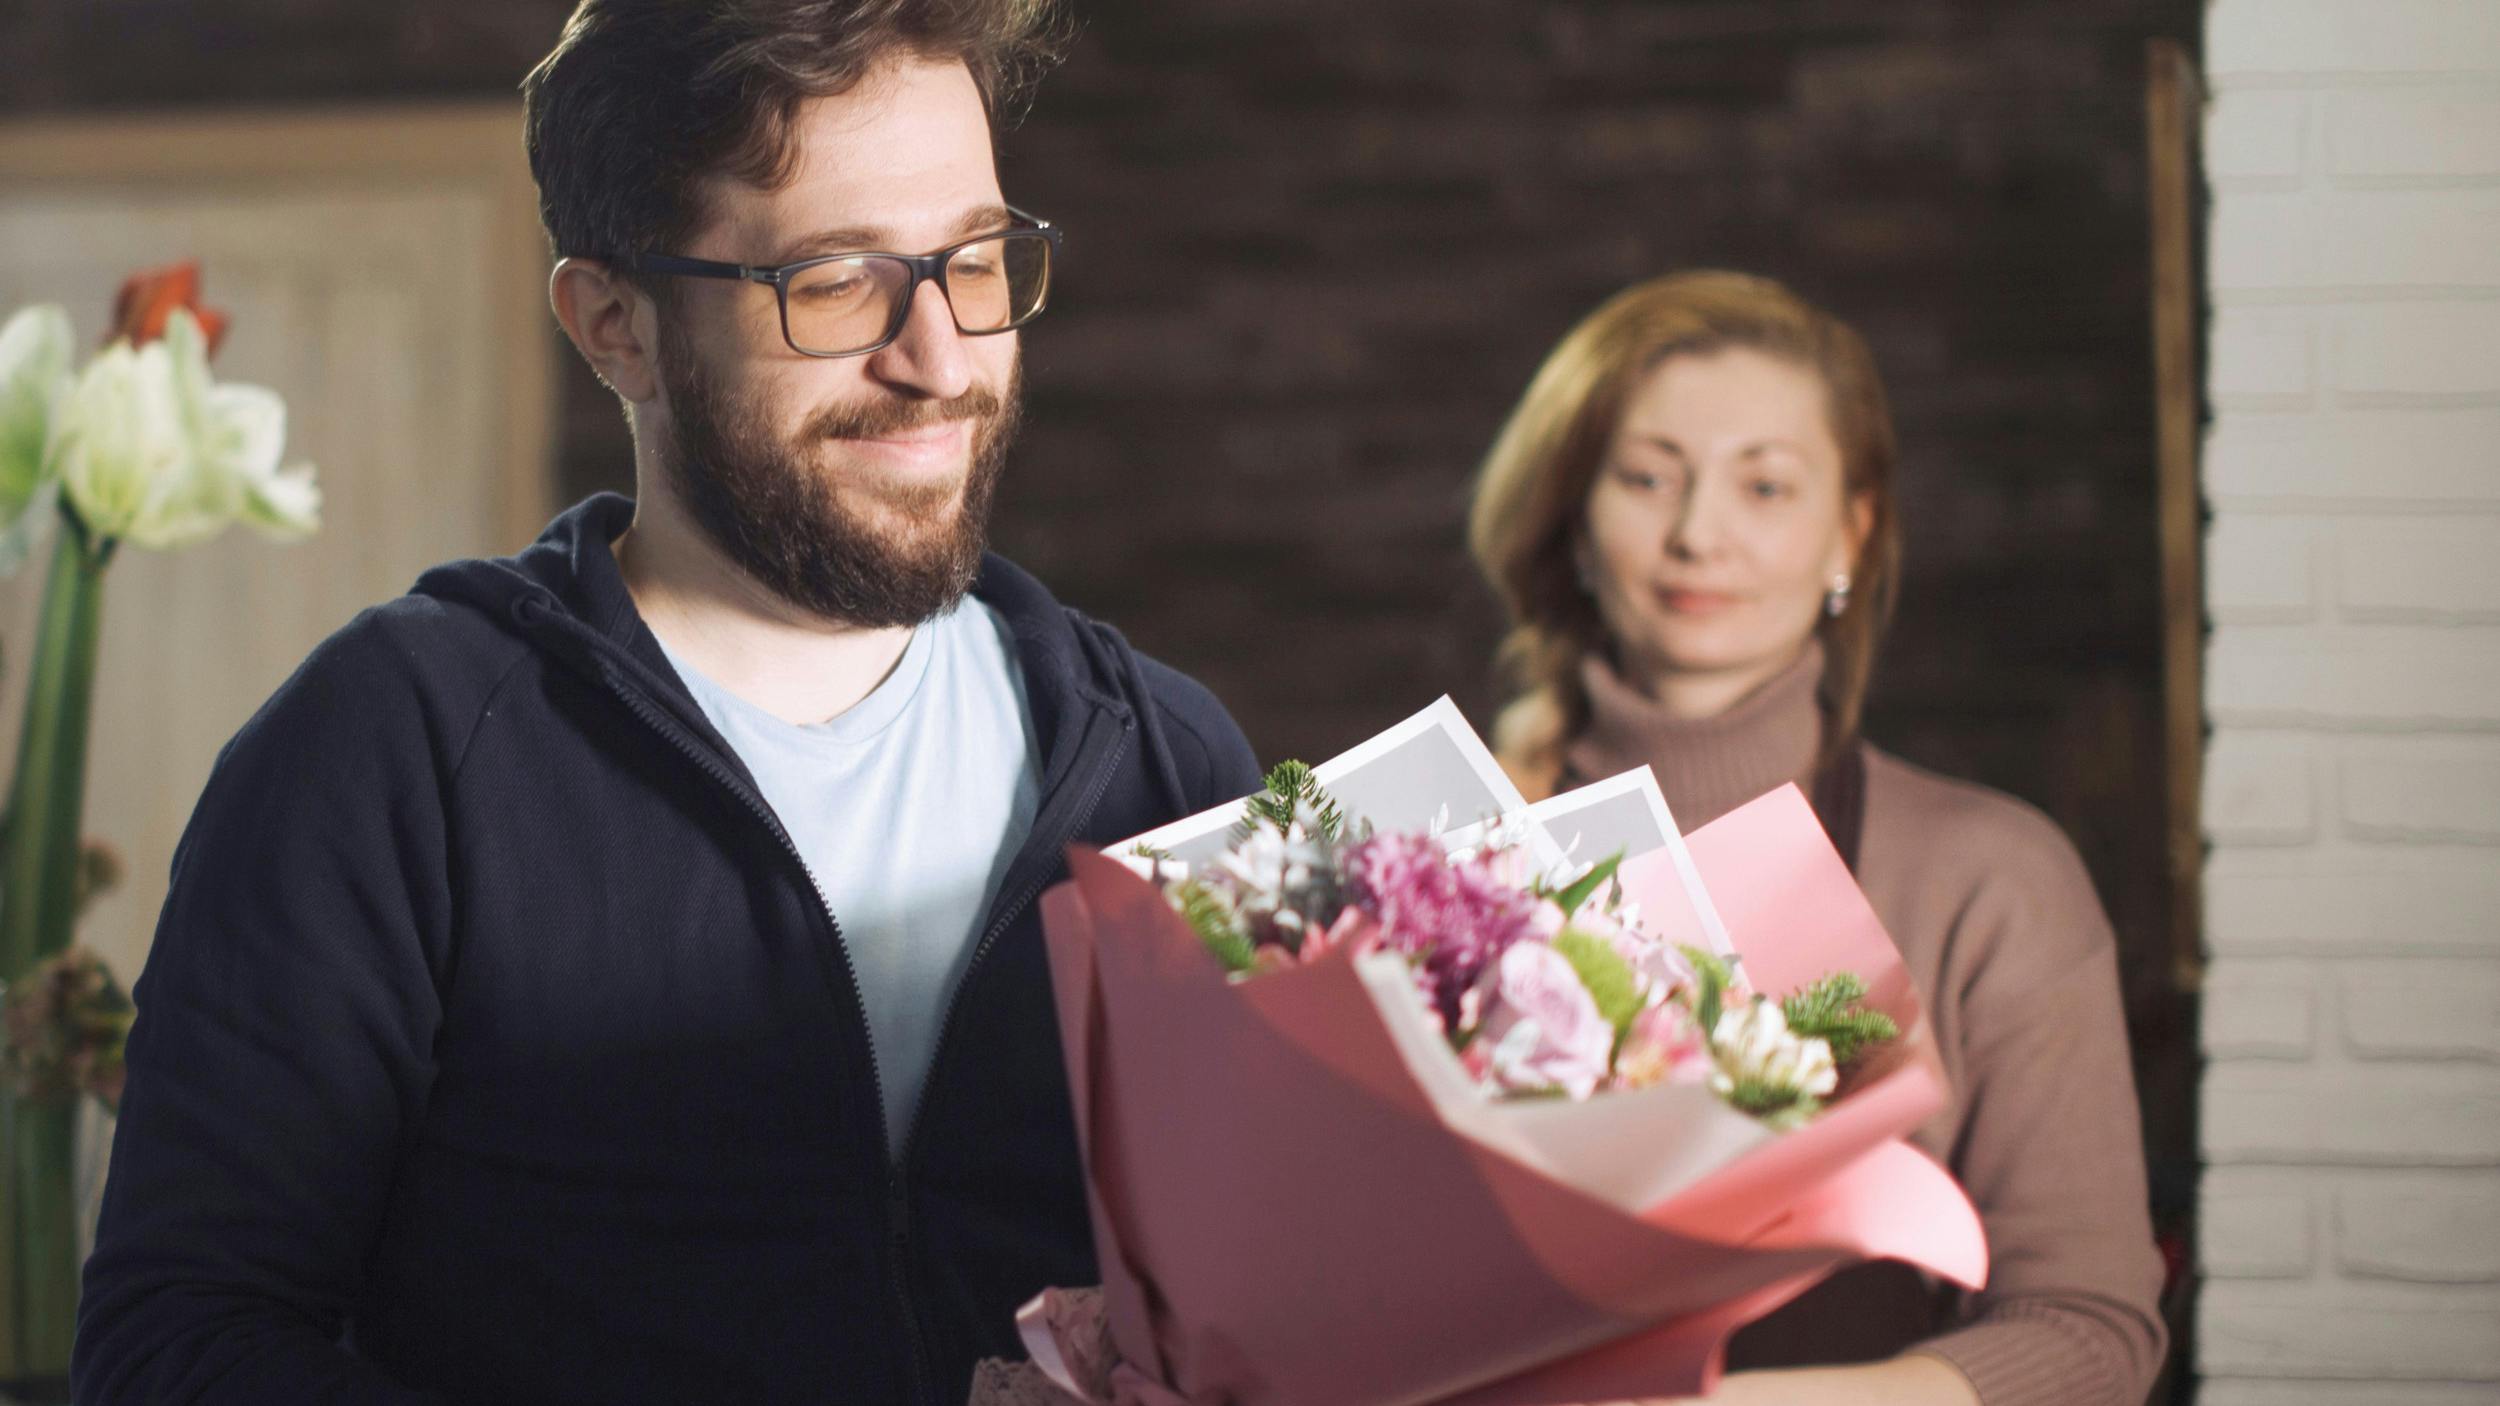 Ung mand kommer med blomster til sin tidligere svigermor.